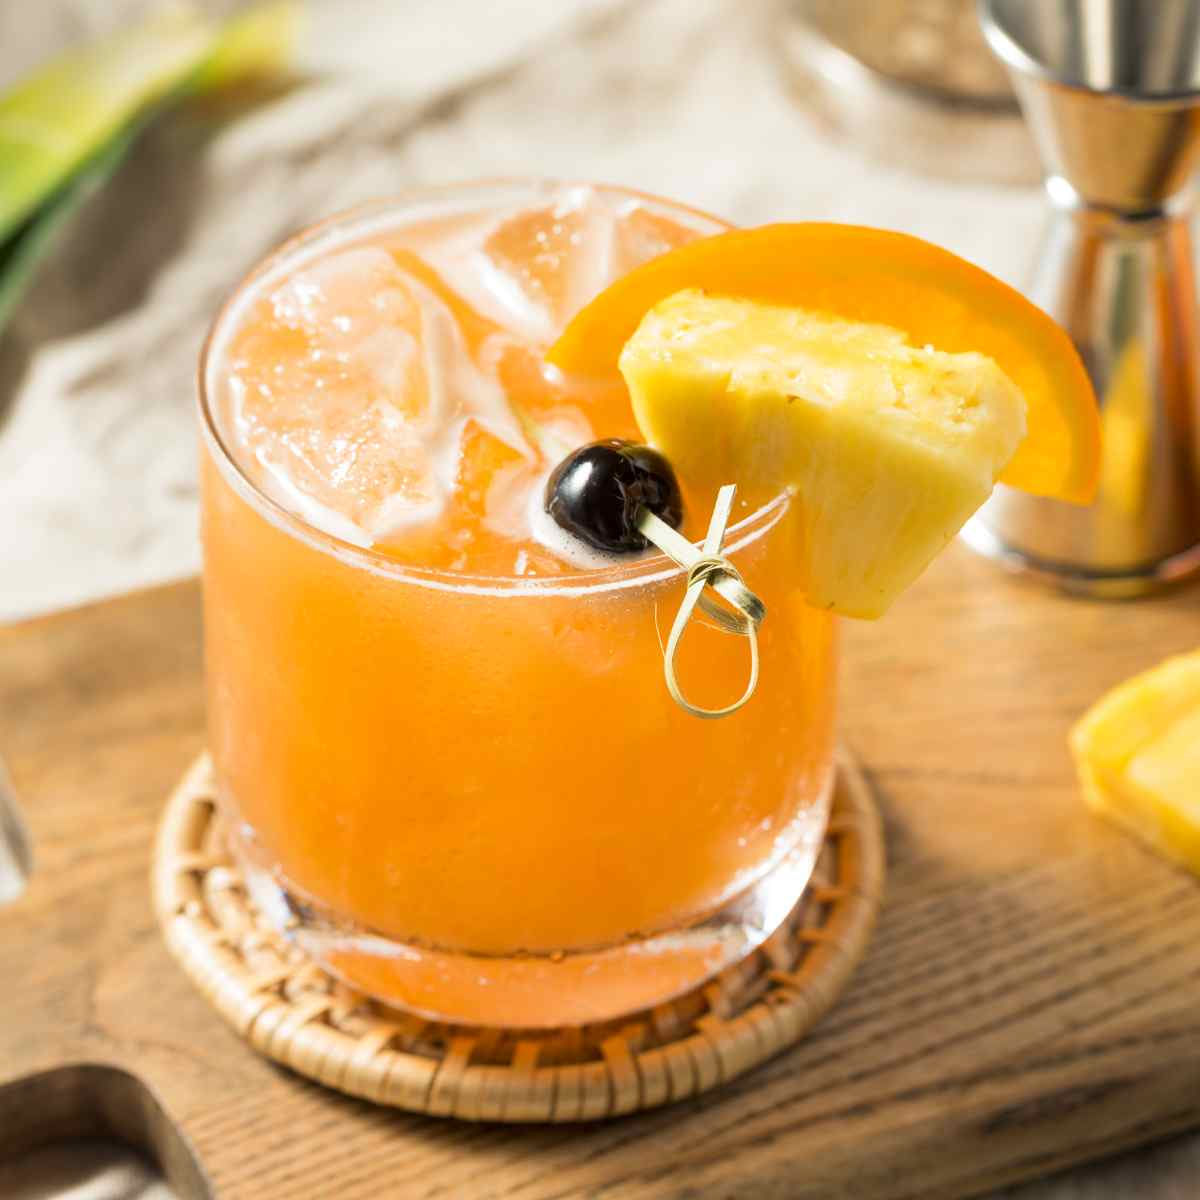 Rum Runner drink on wooden board next to orange